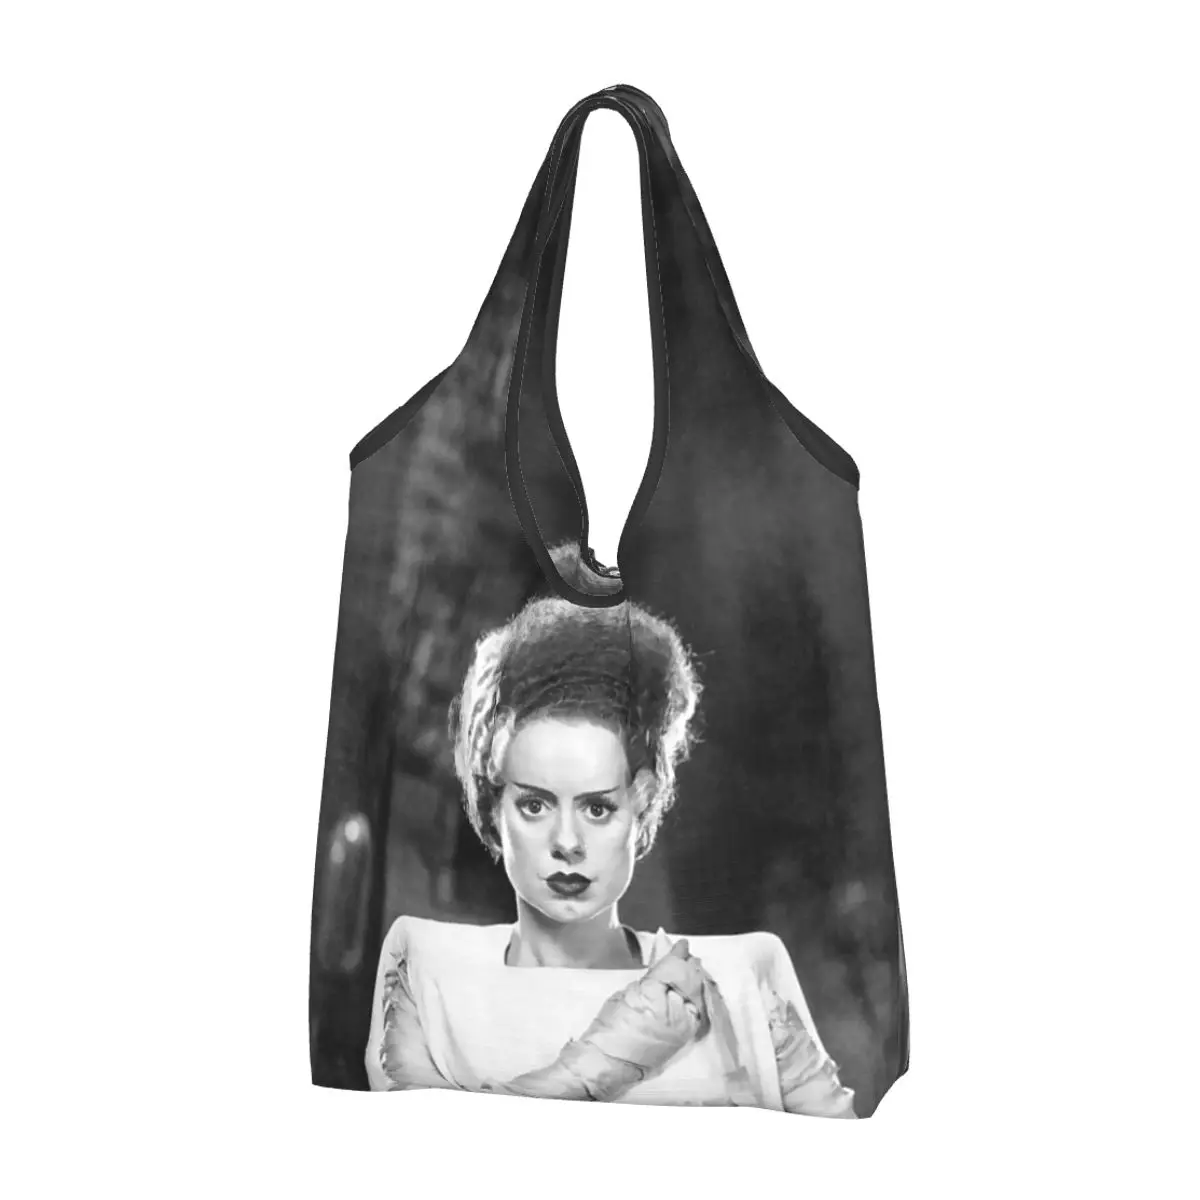 

Fashion Bride Of Frankenstein Shopping Tote Bag Portable Horror Film Groceries Shopper Shoulder Bag